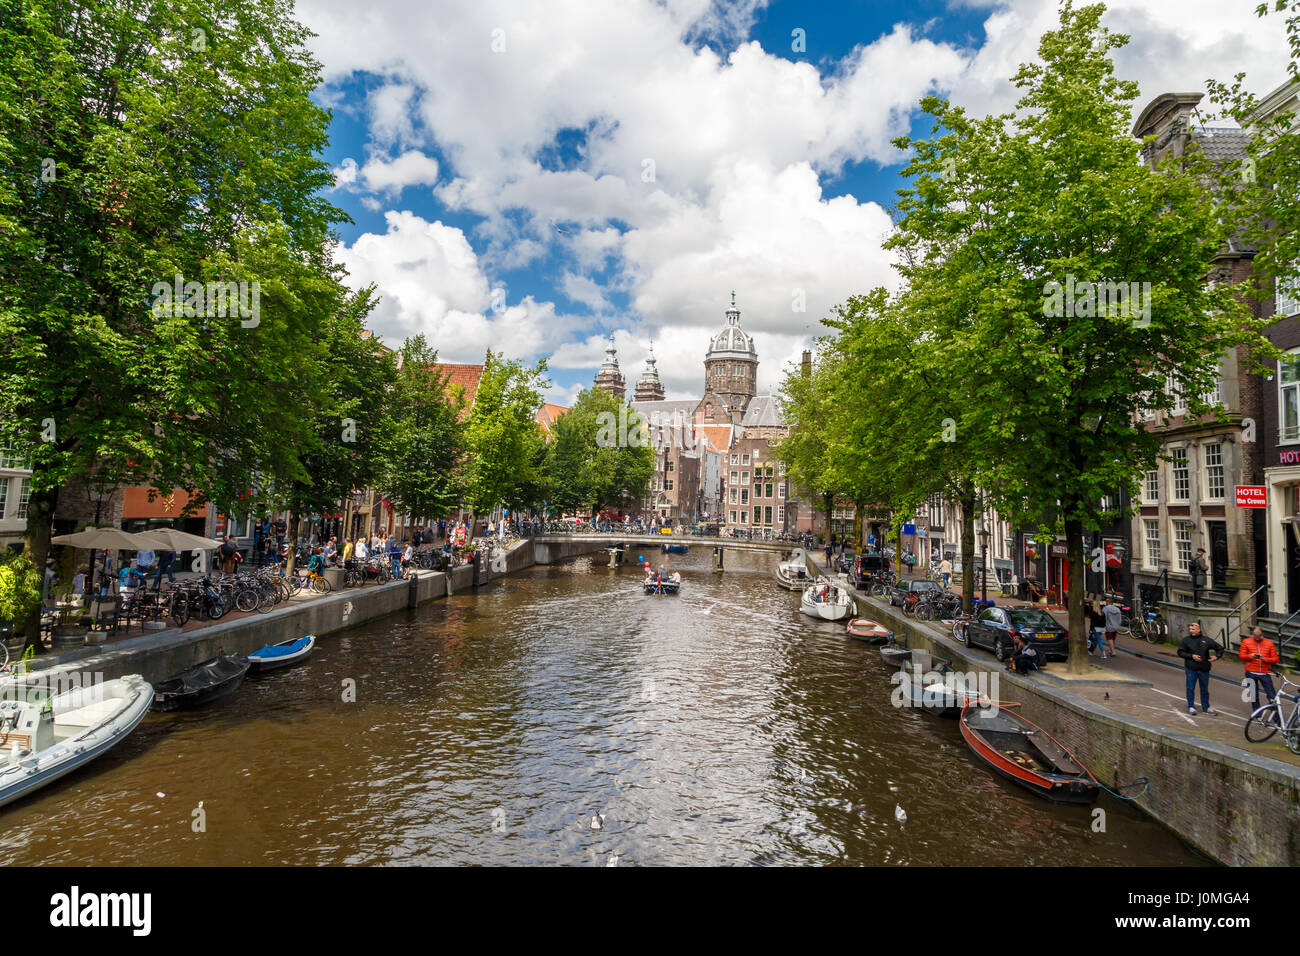 AMSTERDAM, Holanda - Julio 2, 2016 : Vista de calles con canales y típicas casas de Amsterdam sobre el cielo nublado. El Barrio Rojo es popular touristi Foto de stock